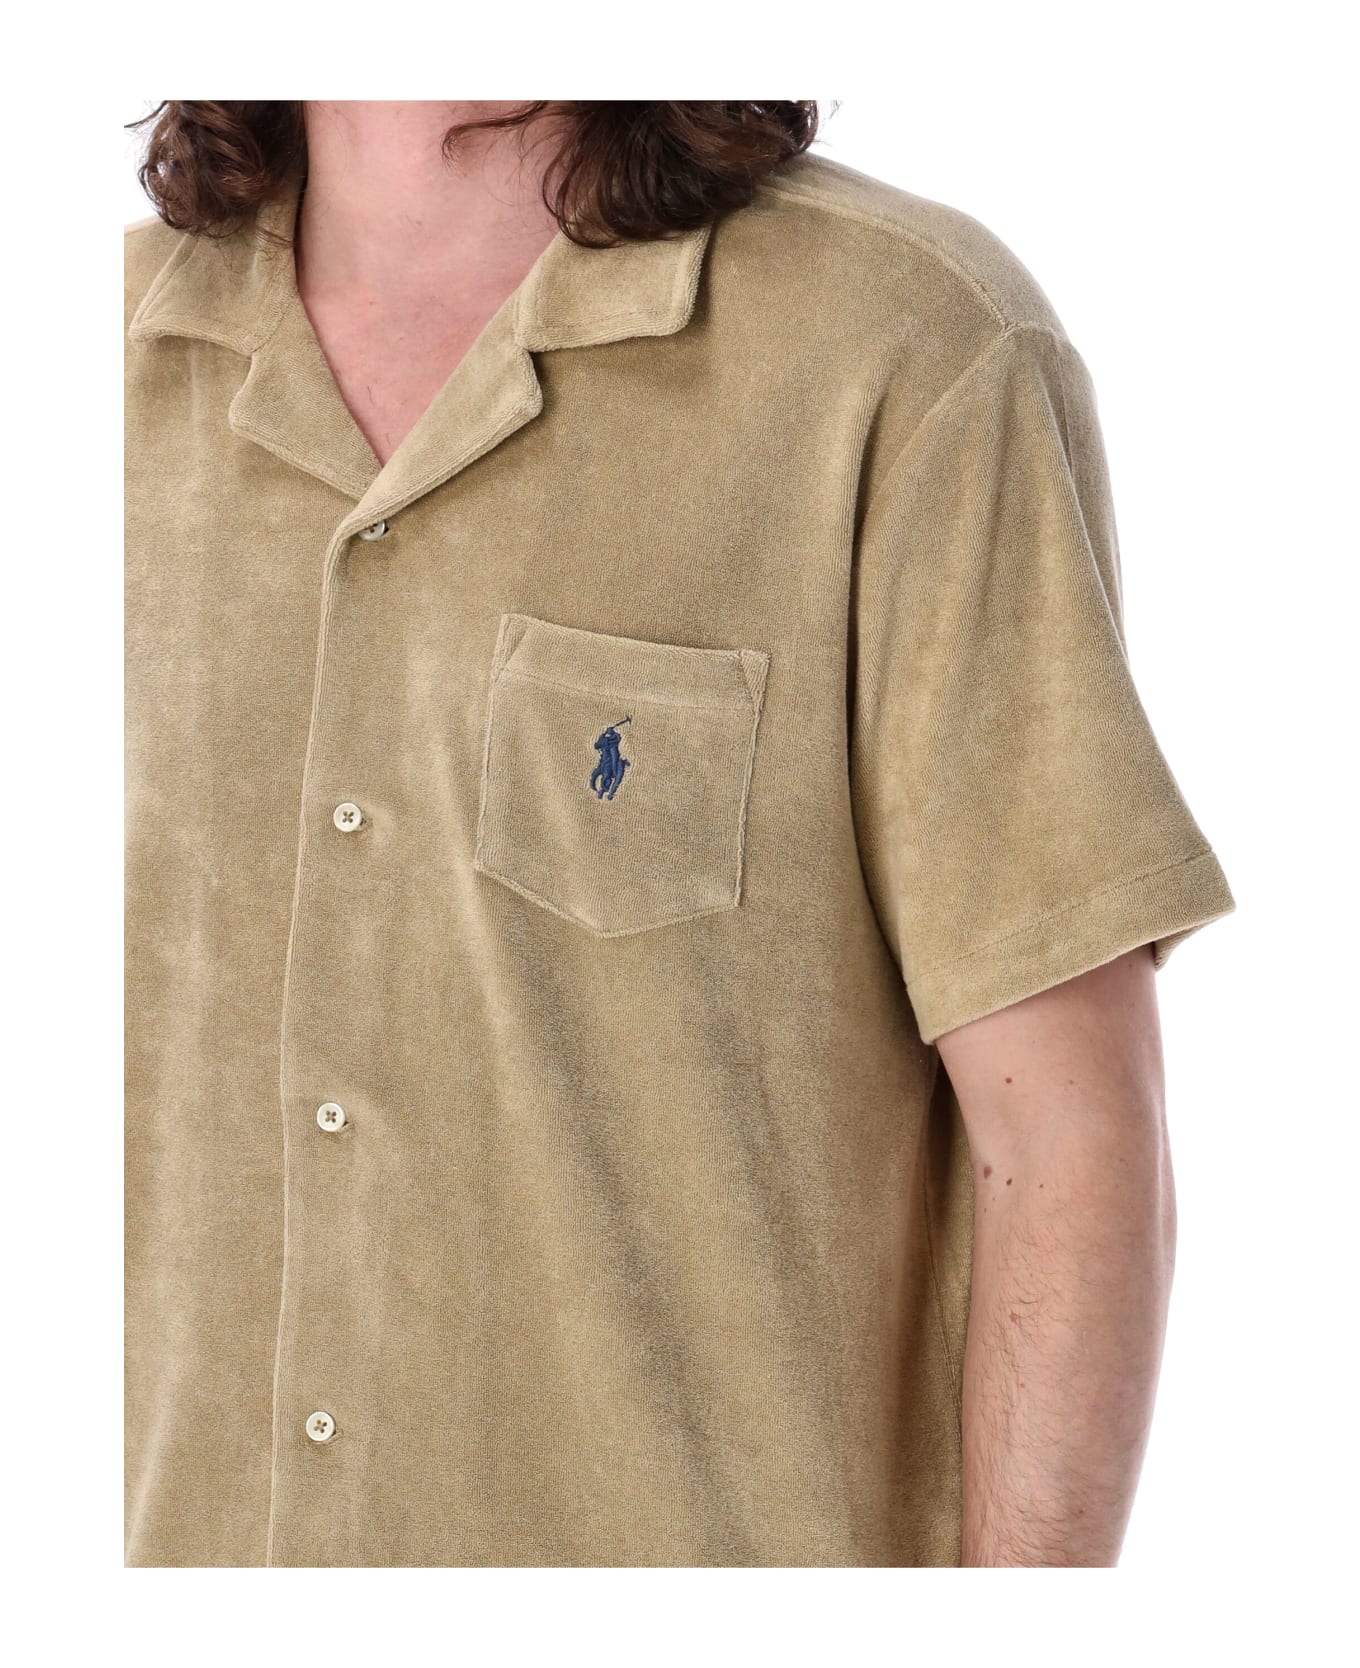 Polo Ralph Lauren Bowling Shirt - BEIGE